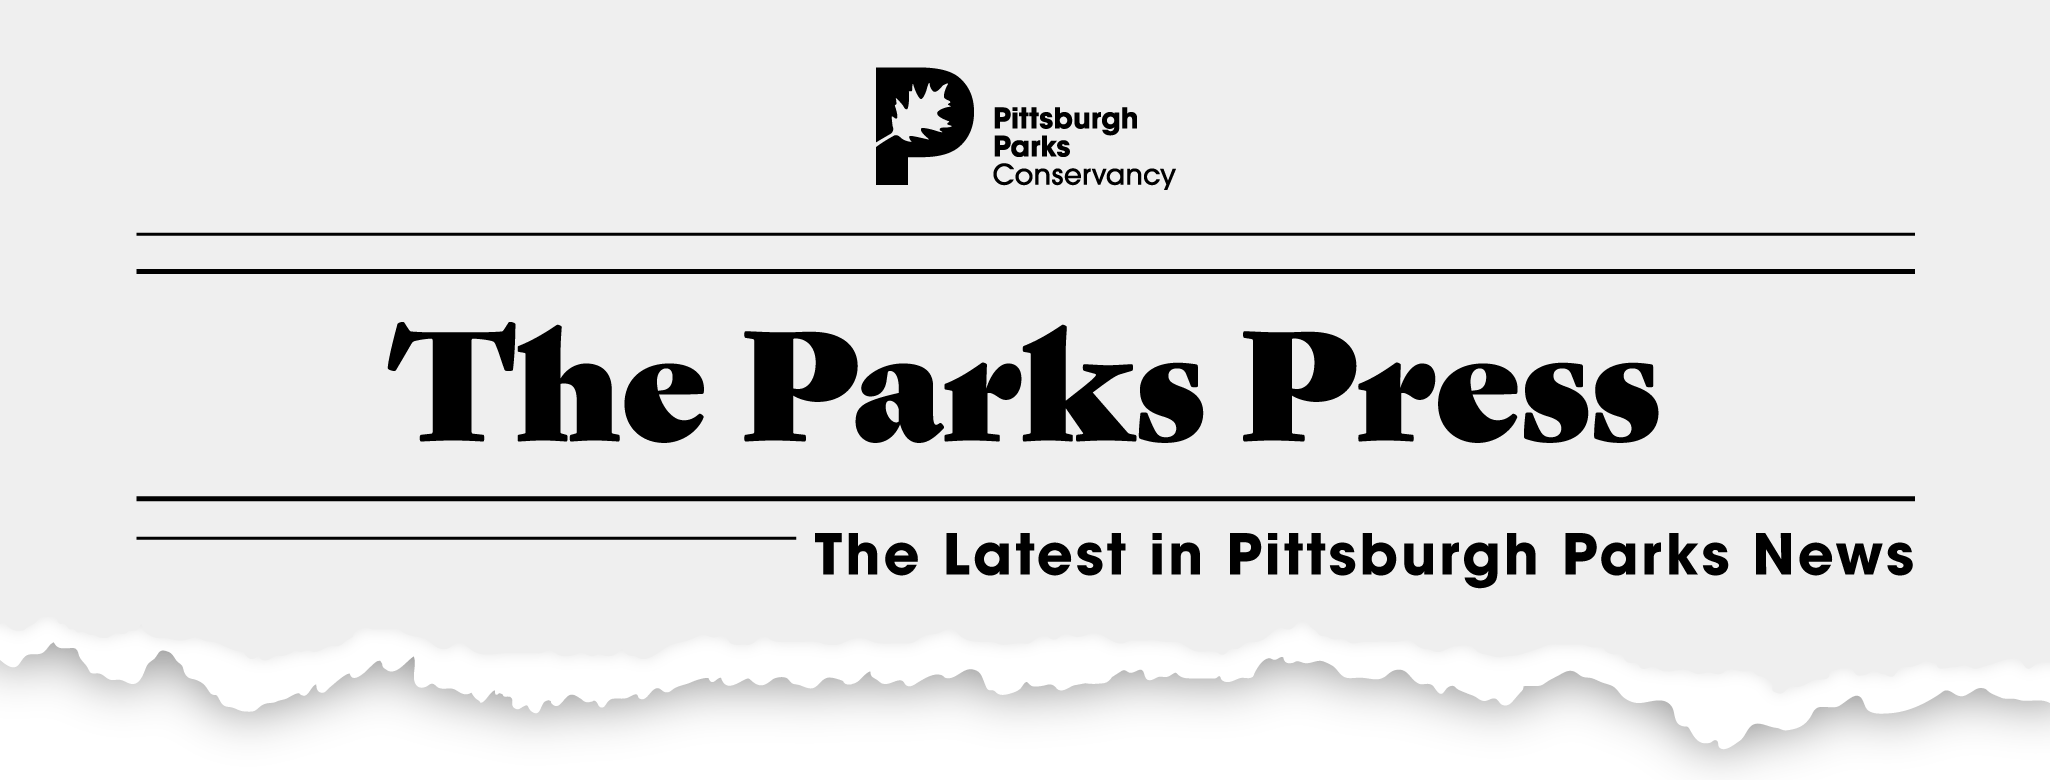 Parks-Press_V3 (002).png